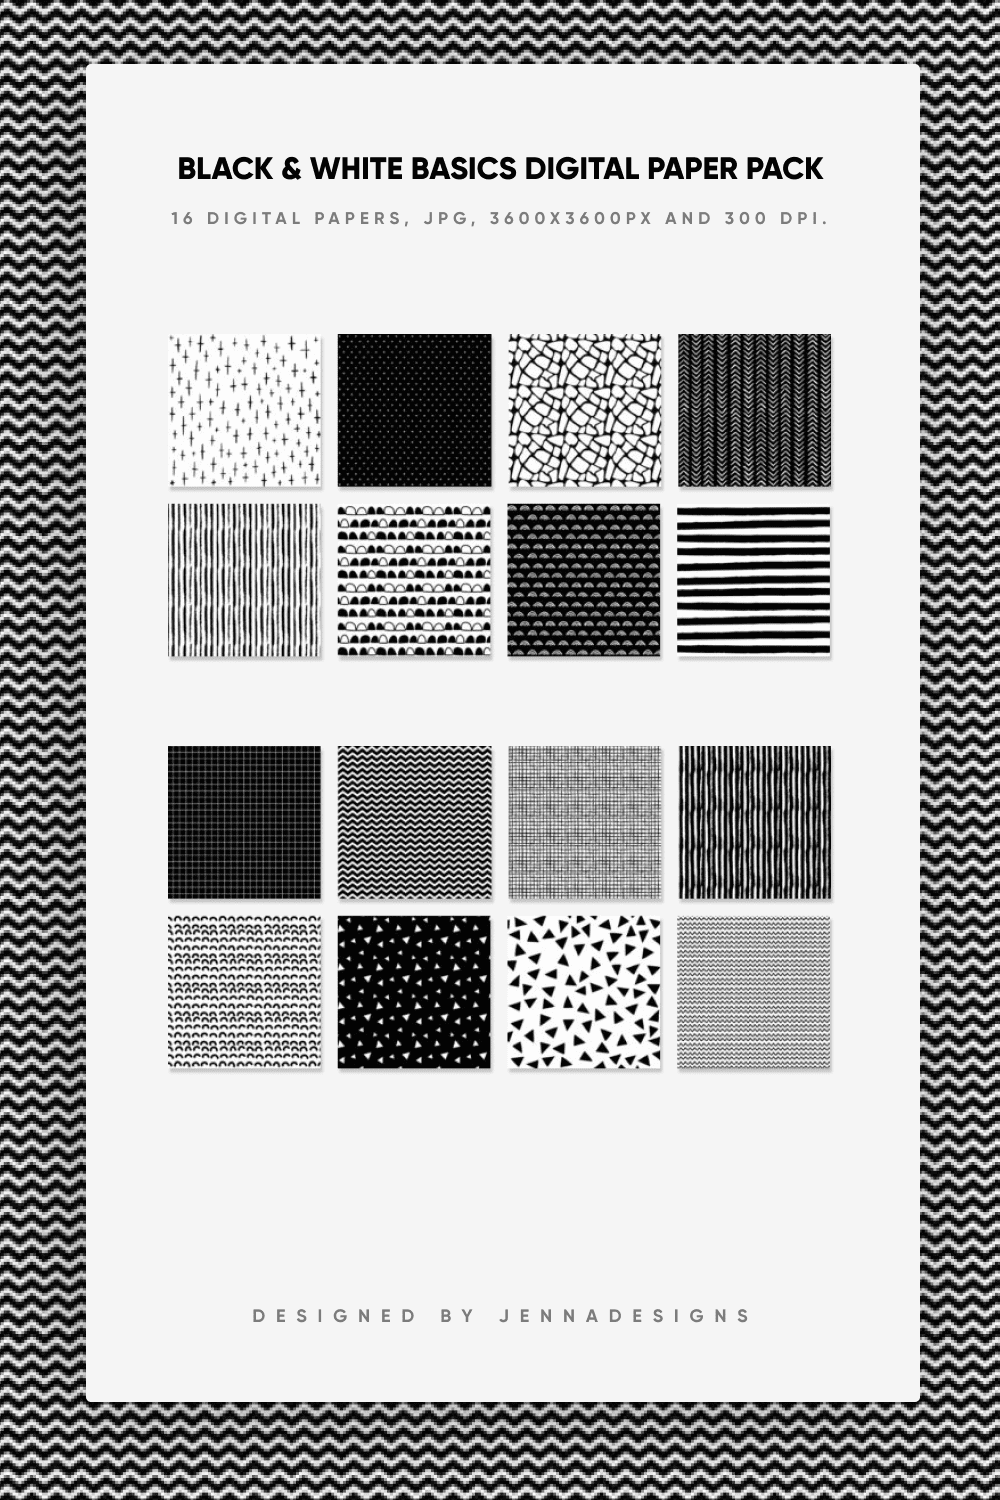 Black & White Basics Digital Paper Pack.